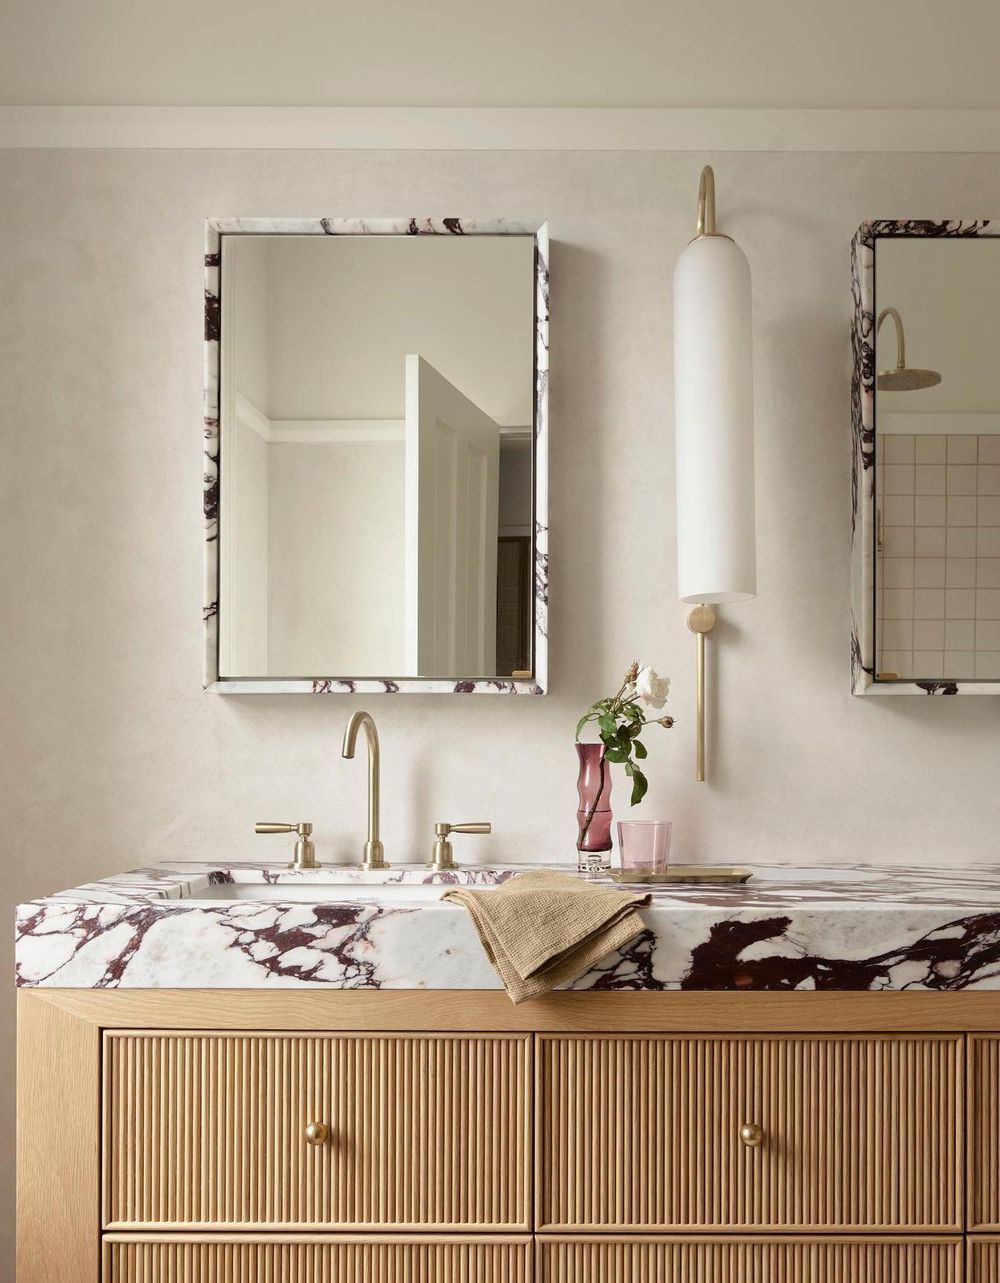 Viola marble bathroom mirror arentpykestudio